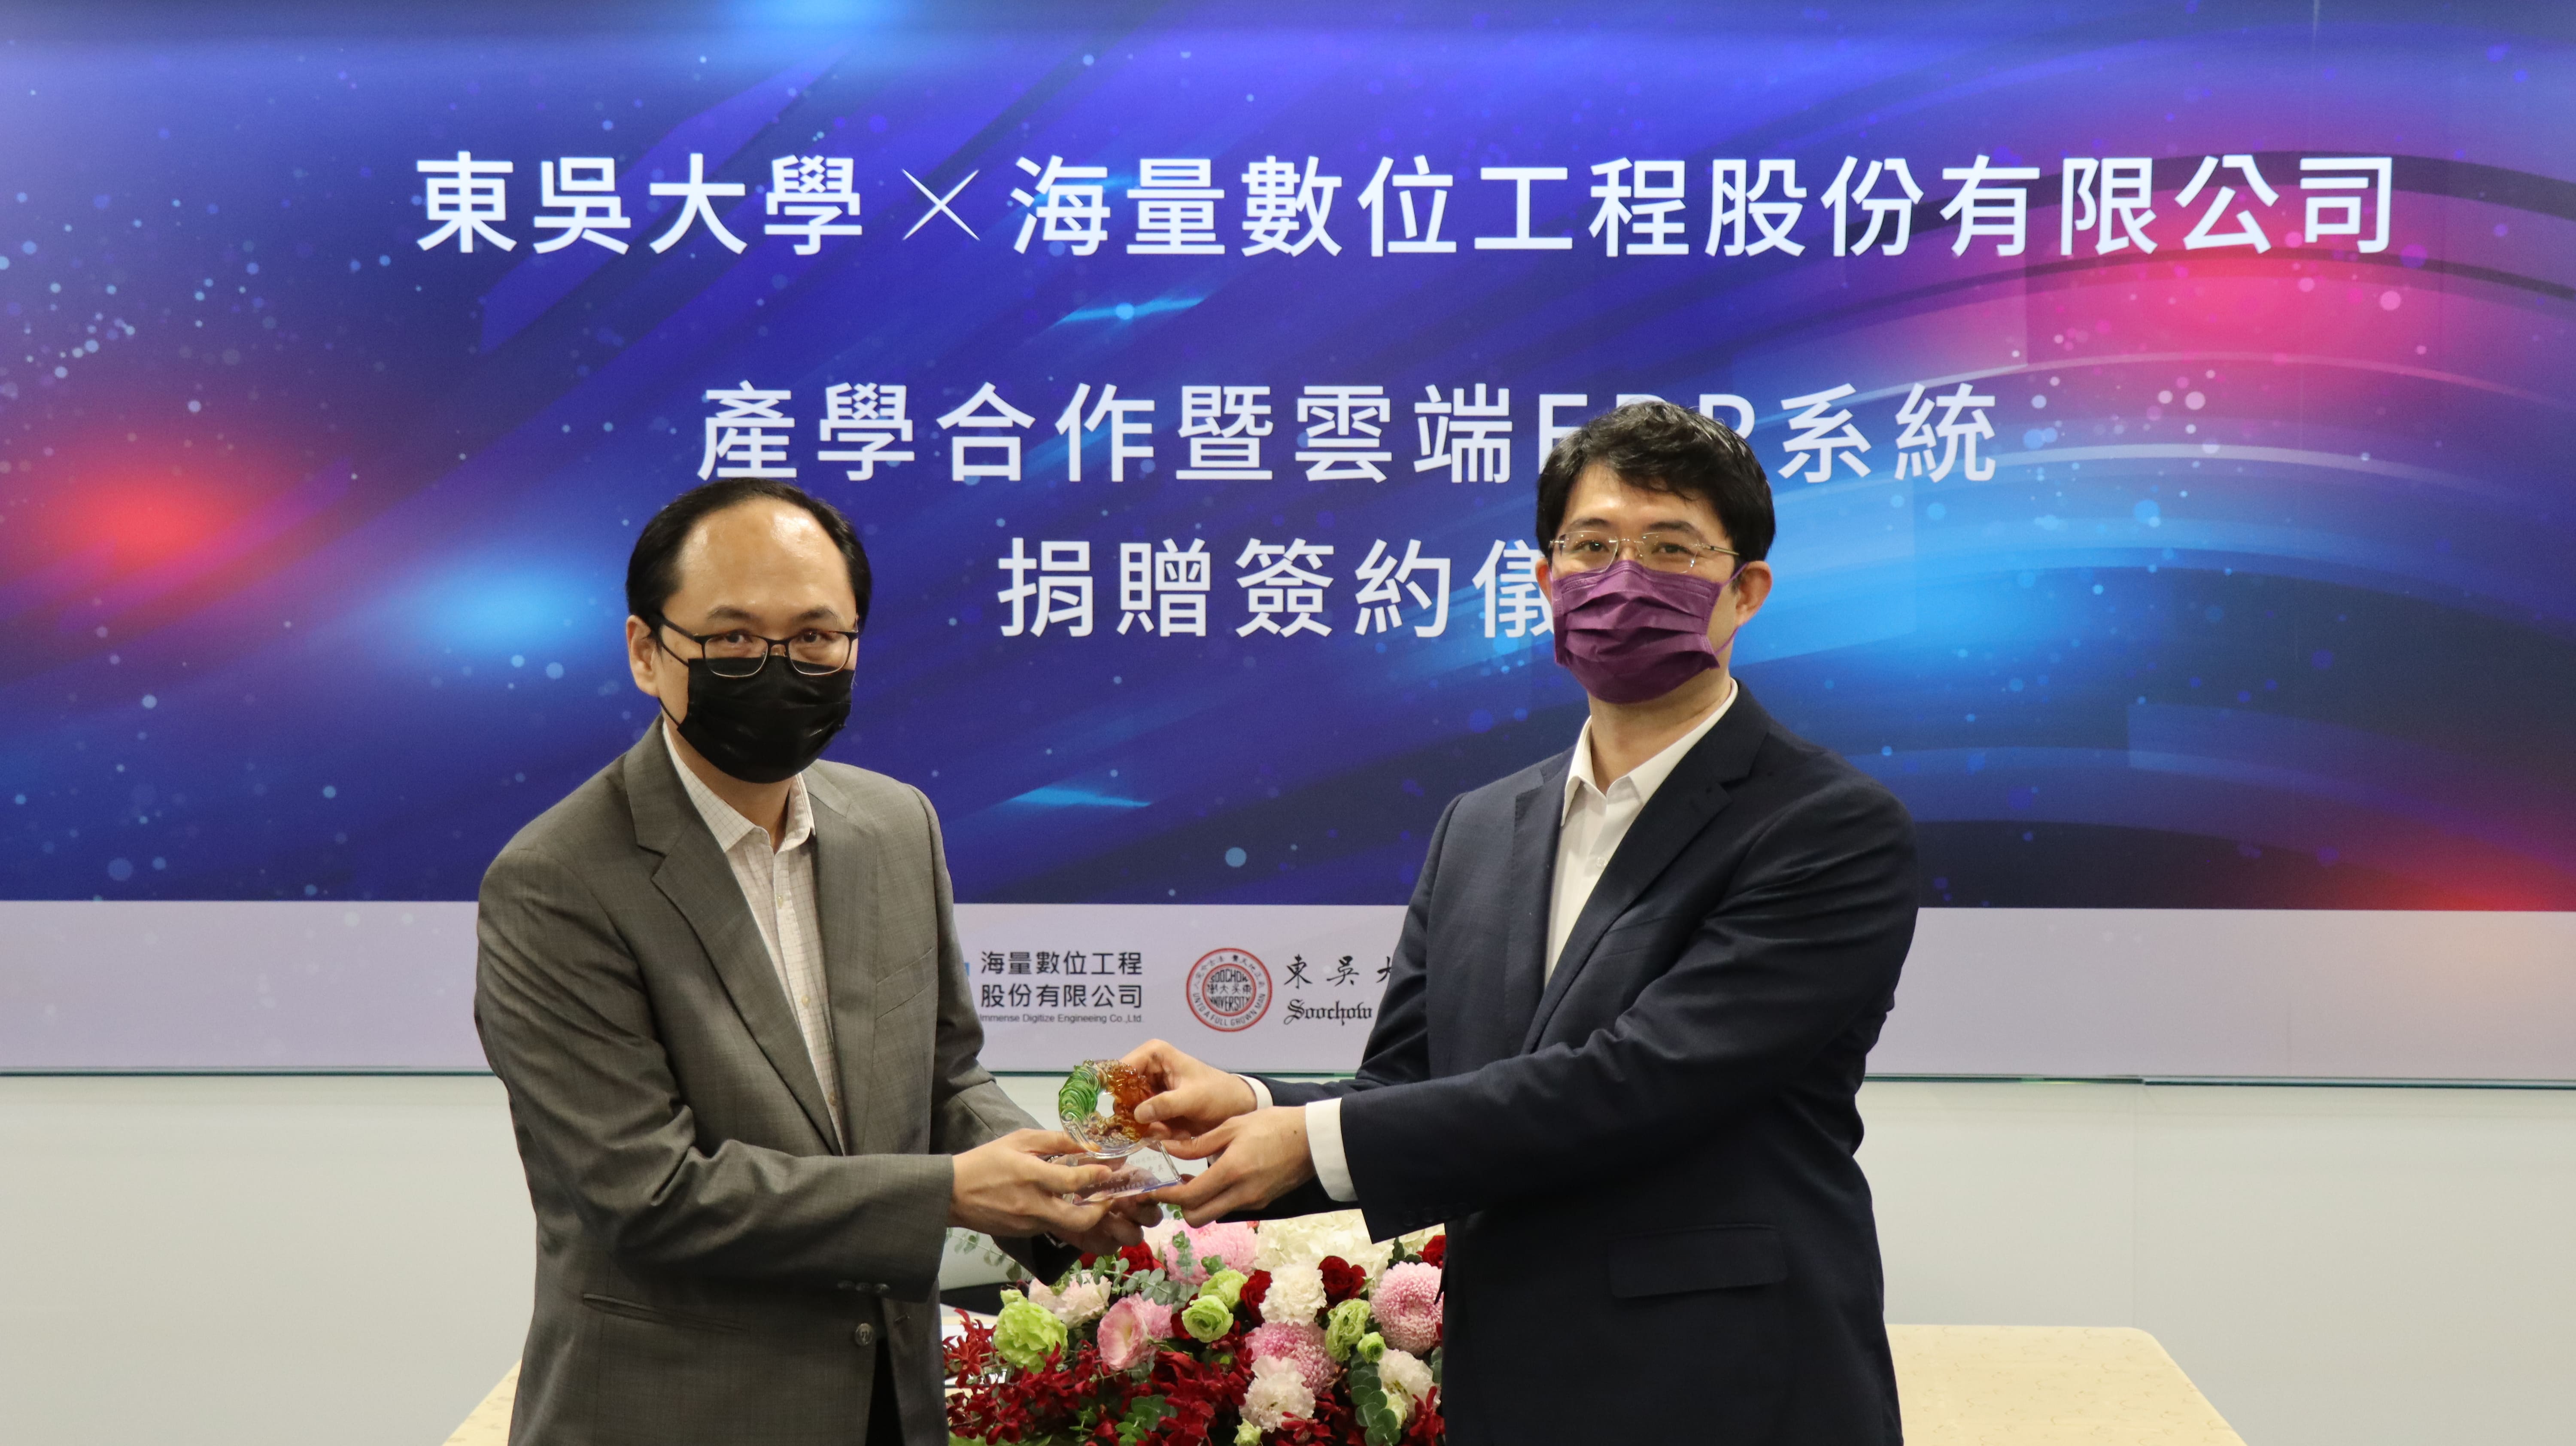 由東吳大學企管系王昱凱主任(左)代表致贈感謝獎牌，由海量數位工程洪弘毅執行長(右)代表受贈。